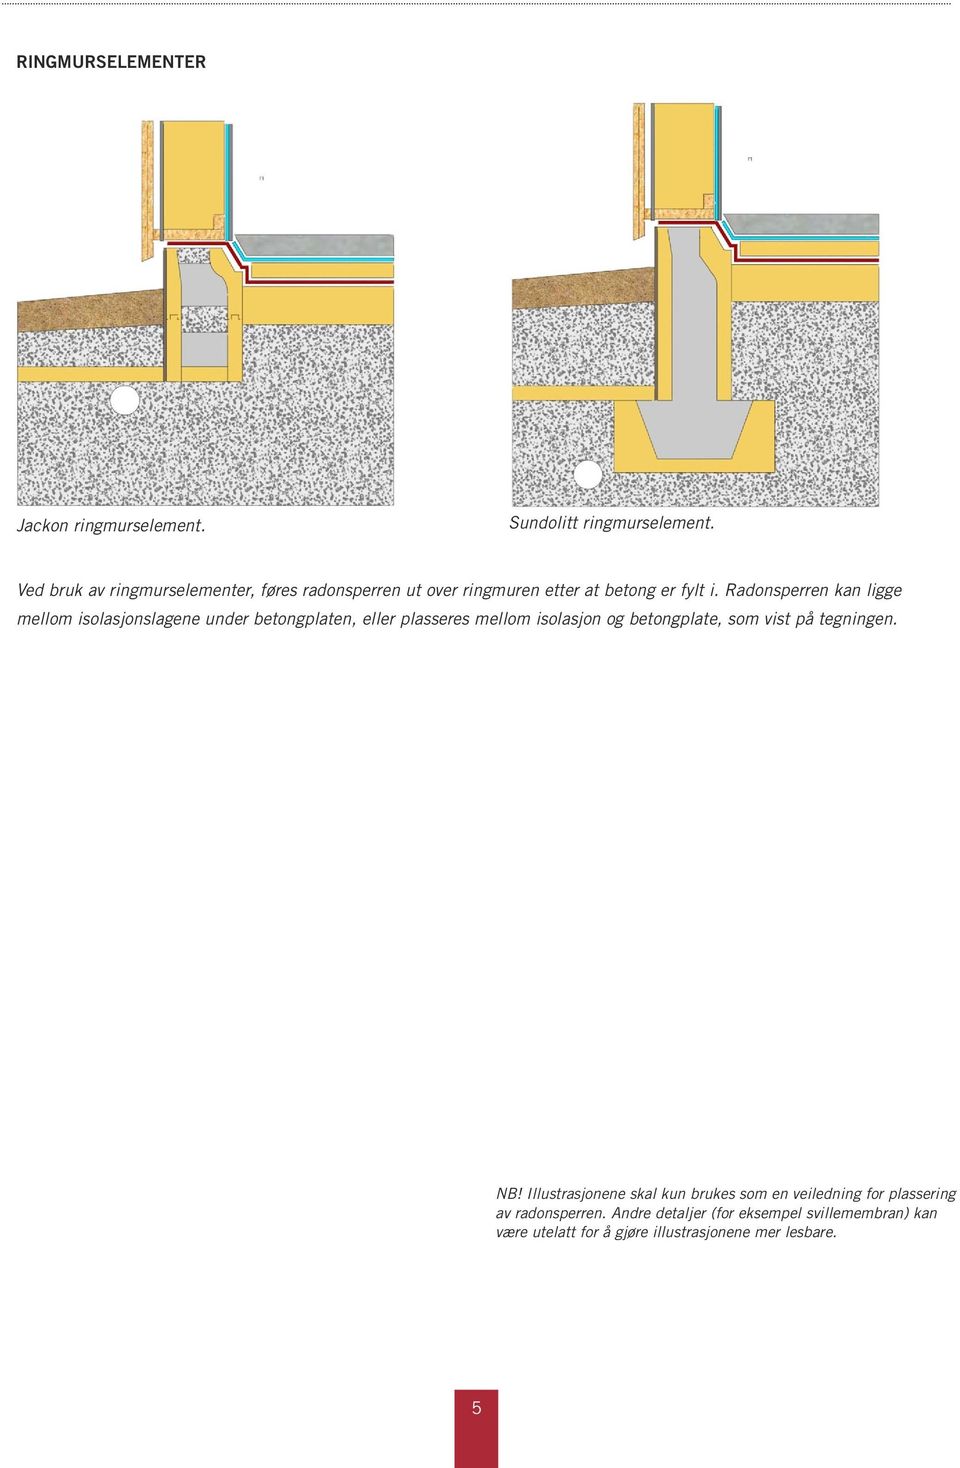 Radonsperren kan ligge mellom isolasjonslagene under betongplaten, eller plasseres mellom isolasjon og betongplate, som